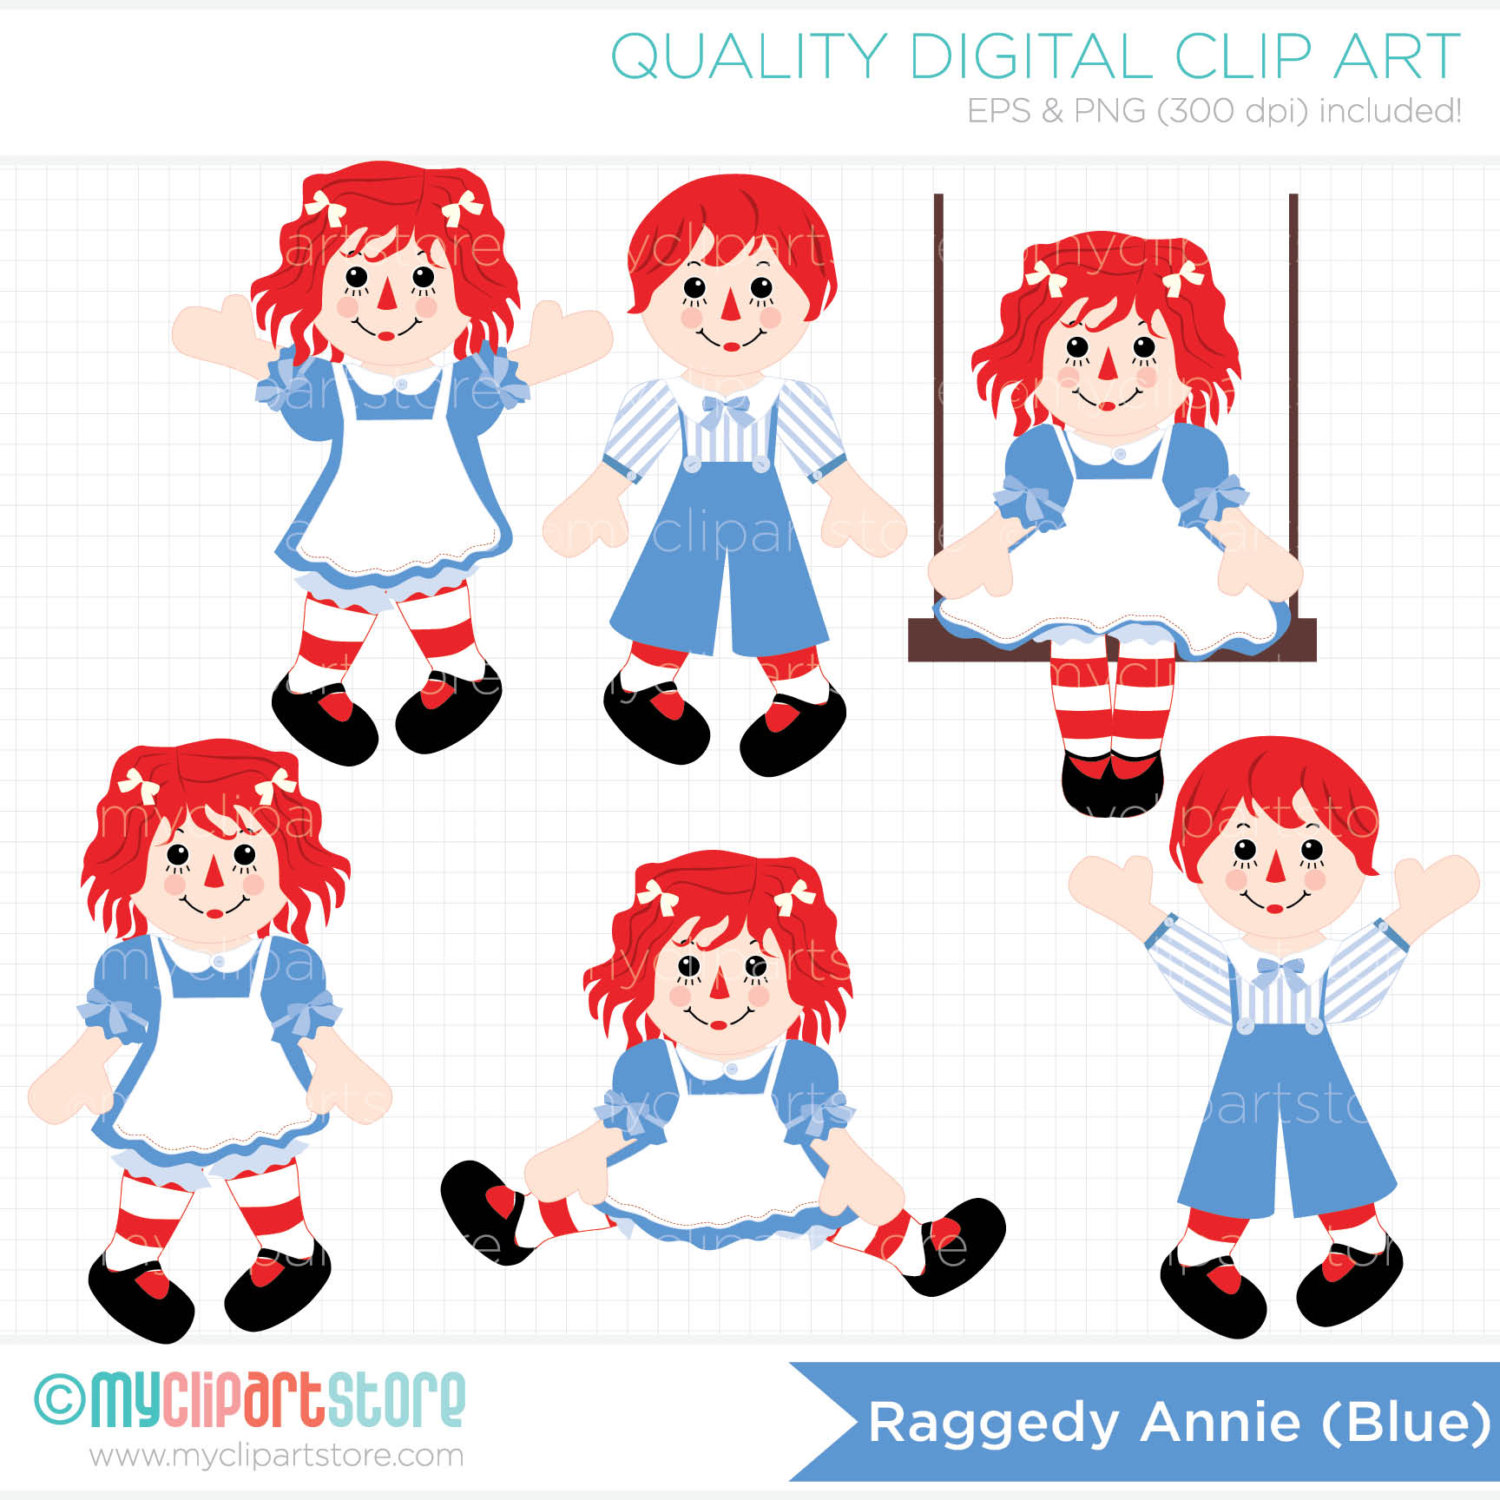 Raggedy Annie   Rag Doll Clip Art   Digital By Myclipartstore